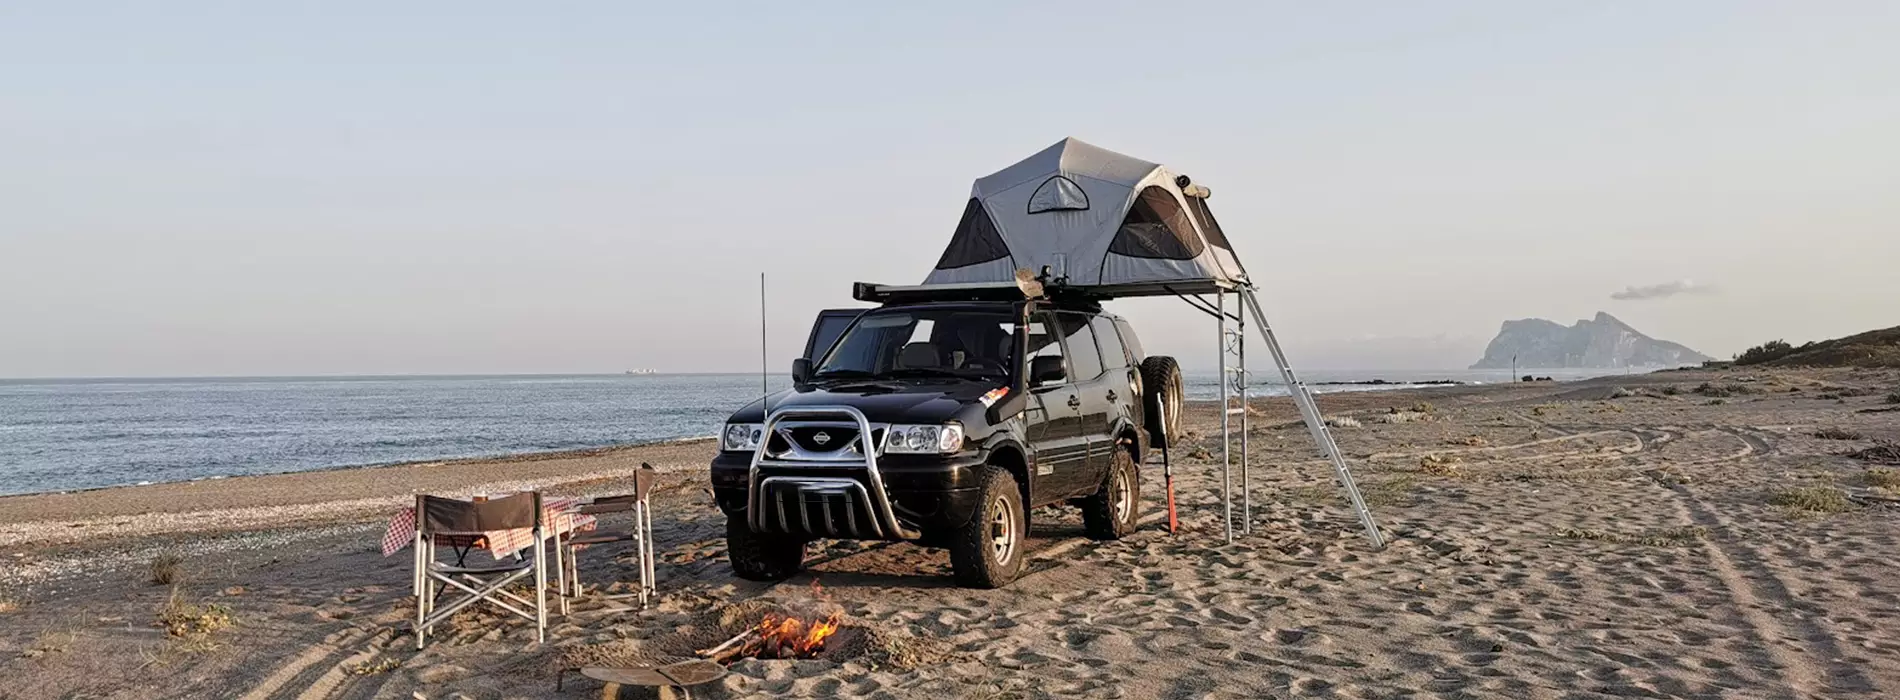 James Baroud Vision beach camping from @mediterran.o